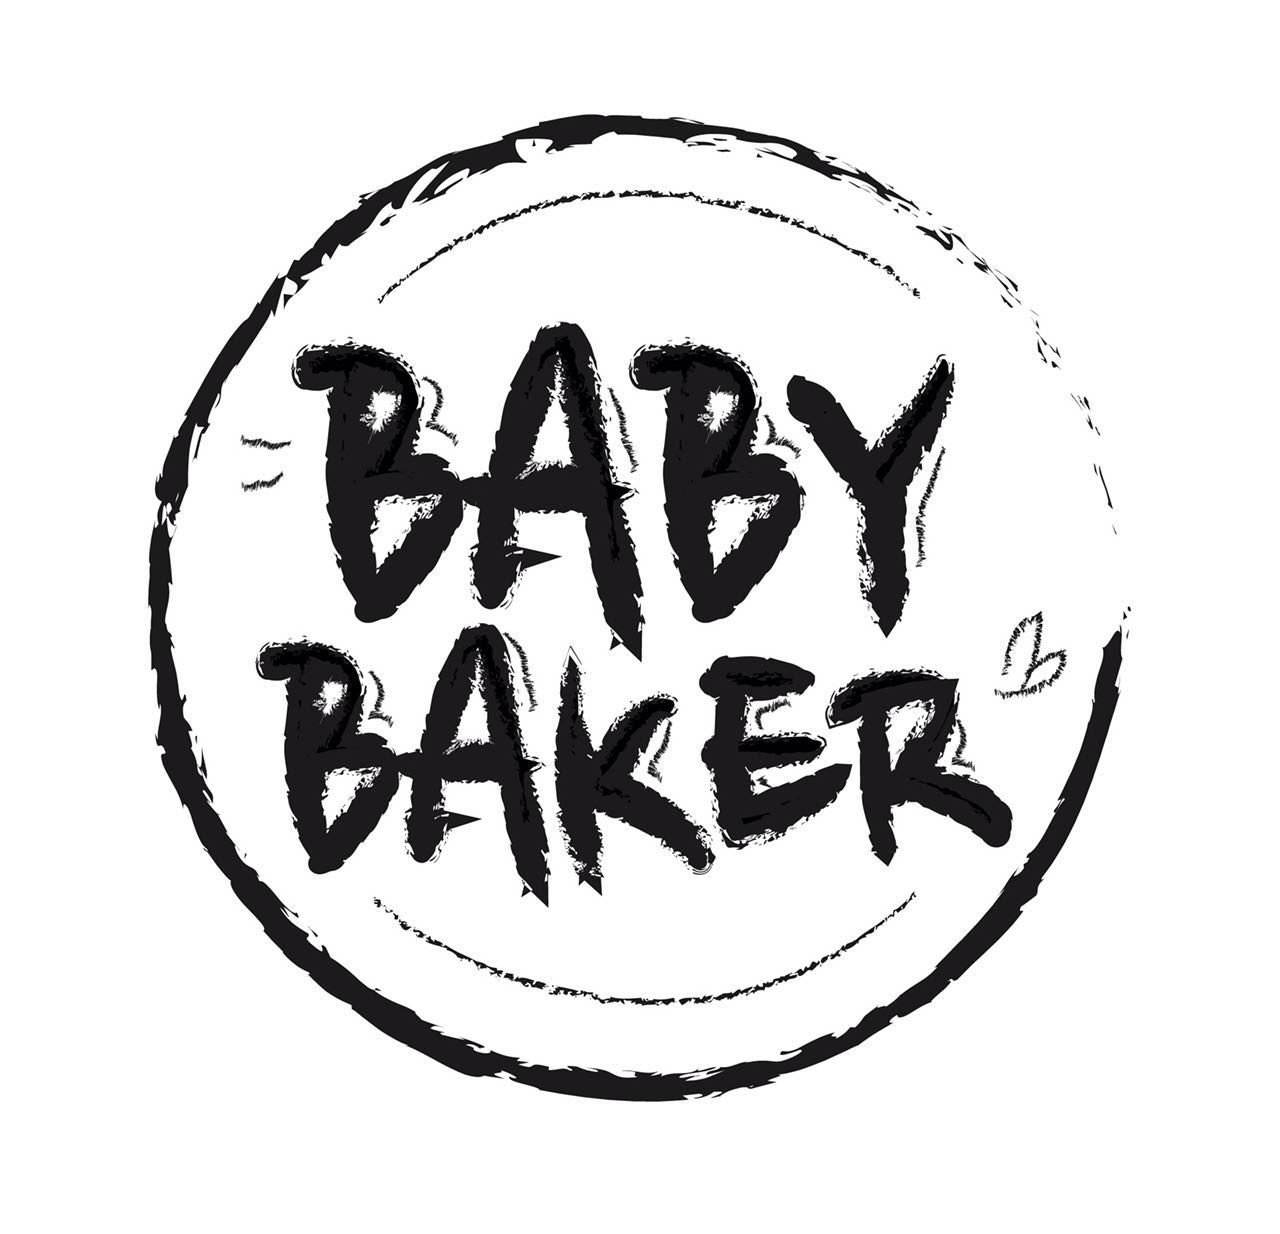 babybaker